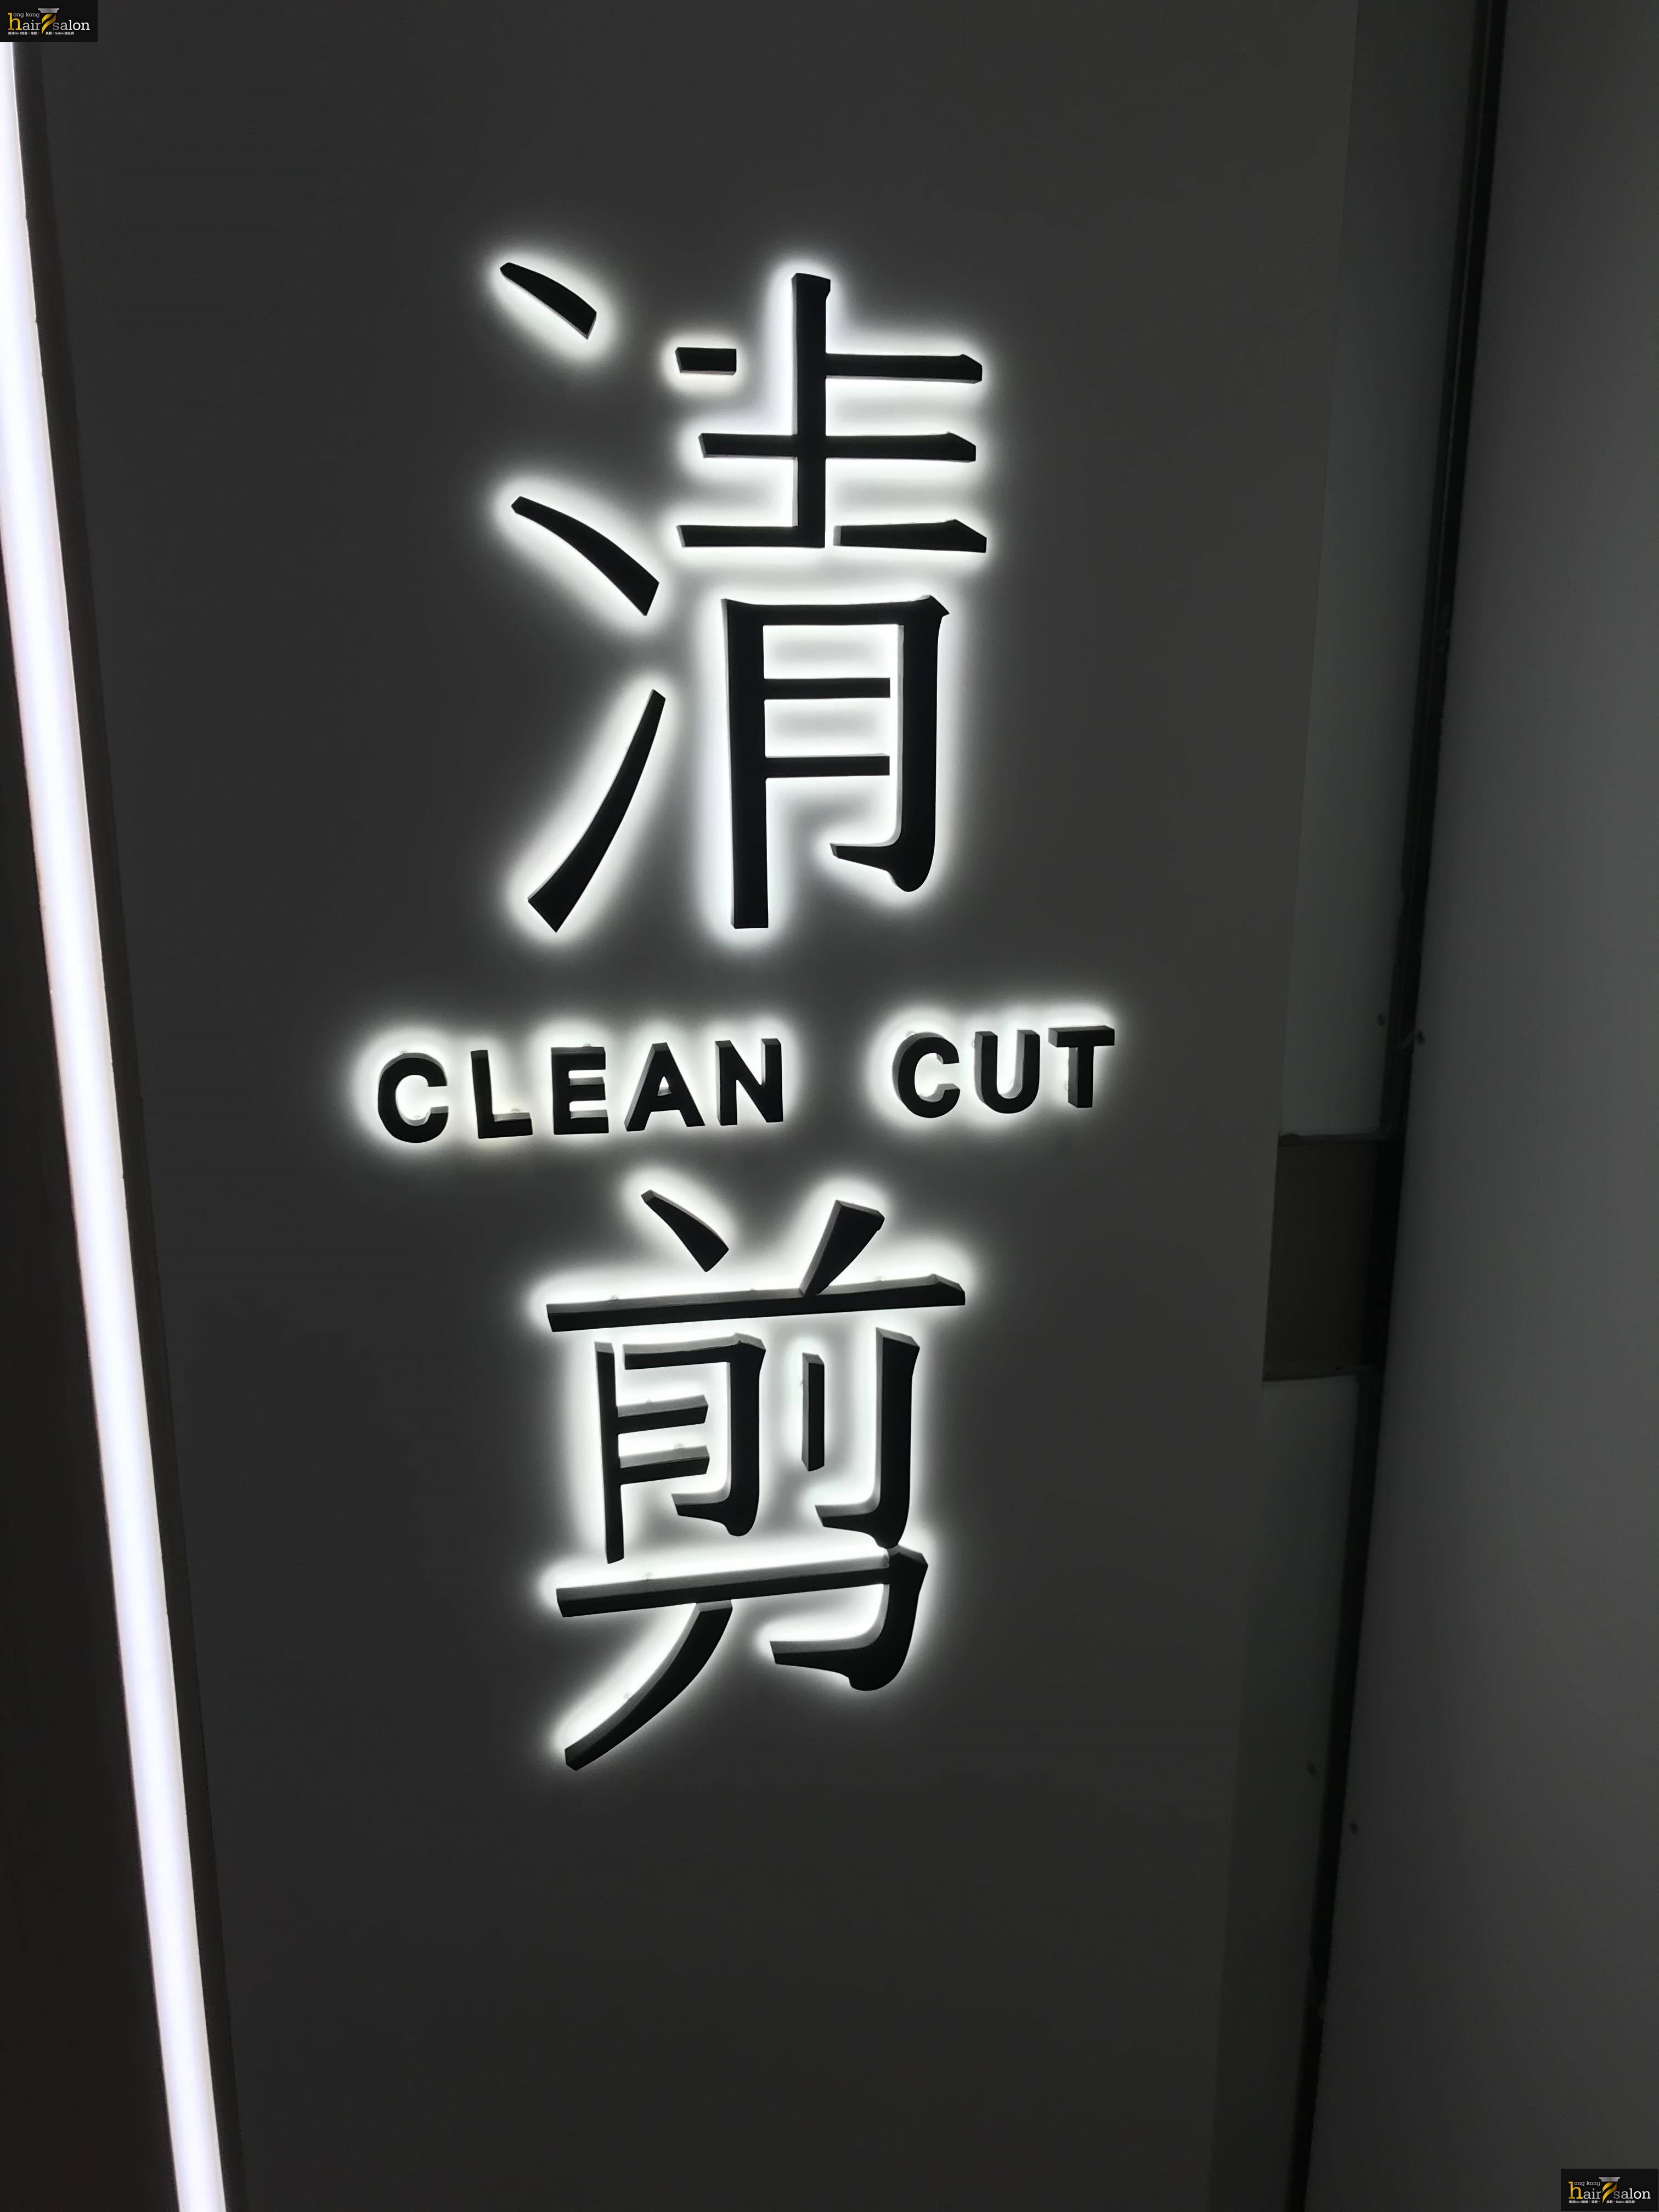 髮型屋 Salon: 清剪 CLEAN CUT (名都廣場)